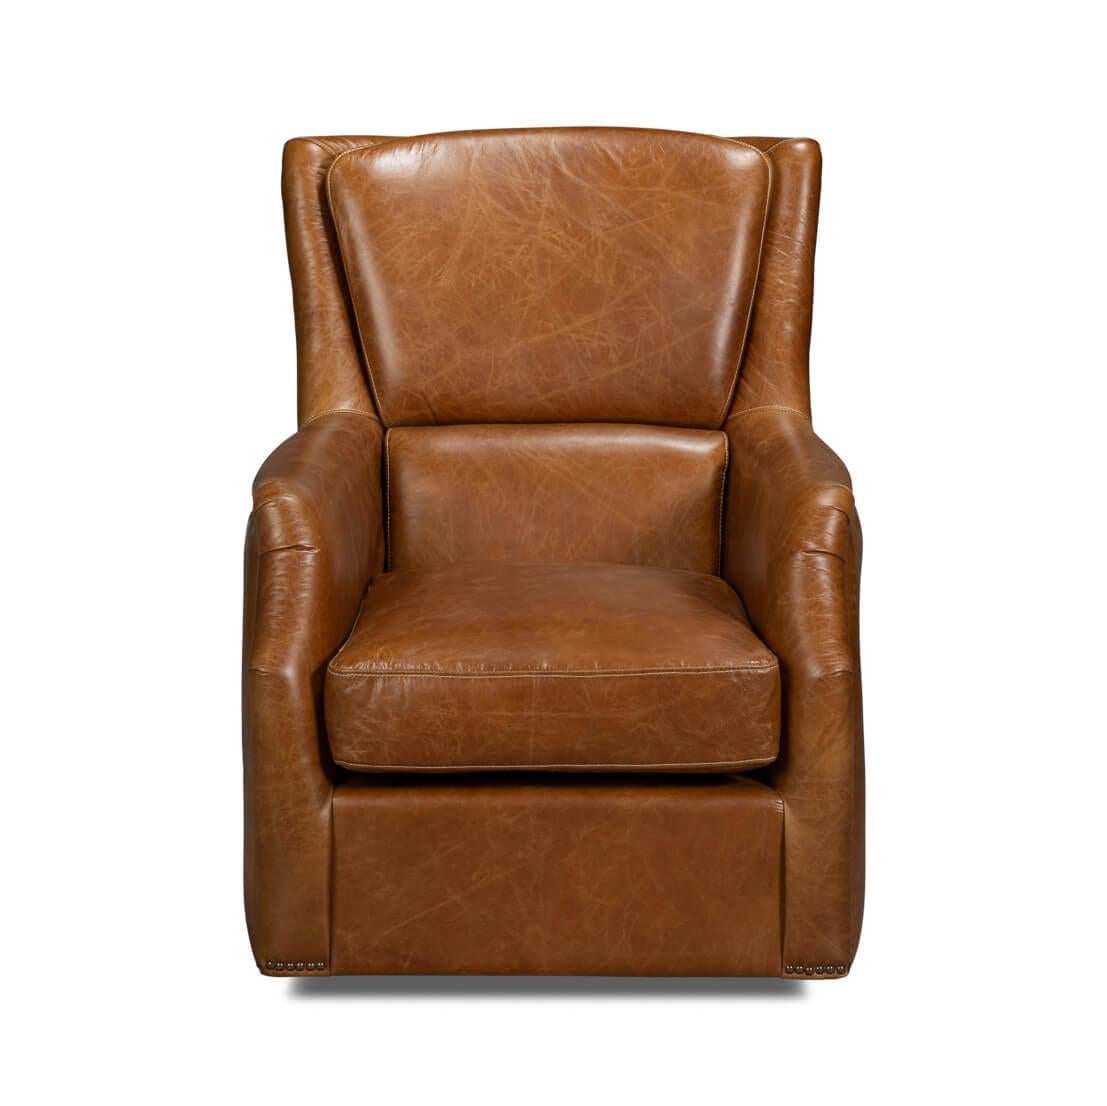 Cette chaise classique est recouverte de notre cuir vintage Cuba Brown et fabriquée avec du cuir Aniline pur de première qualité.

Dimensions : 31